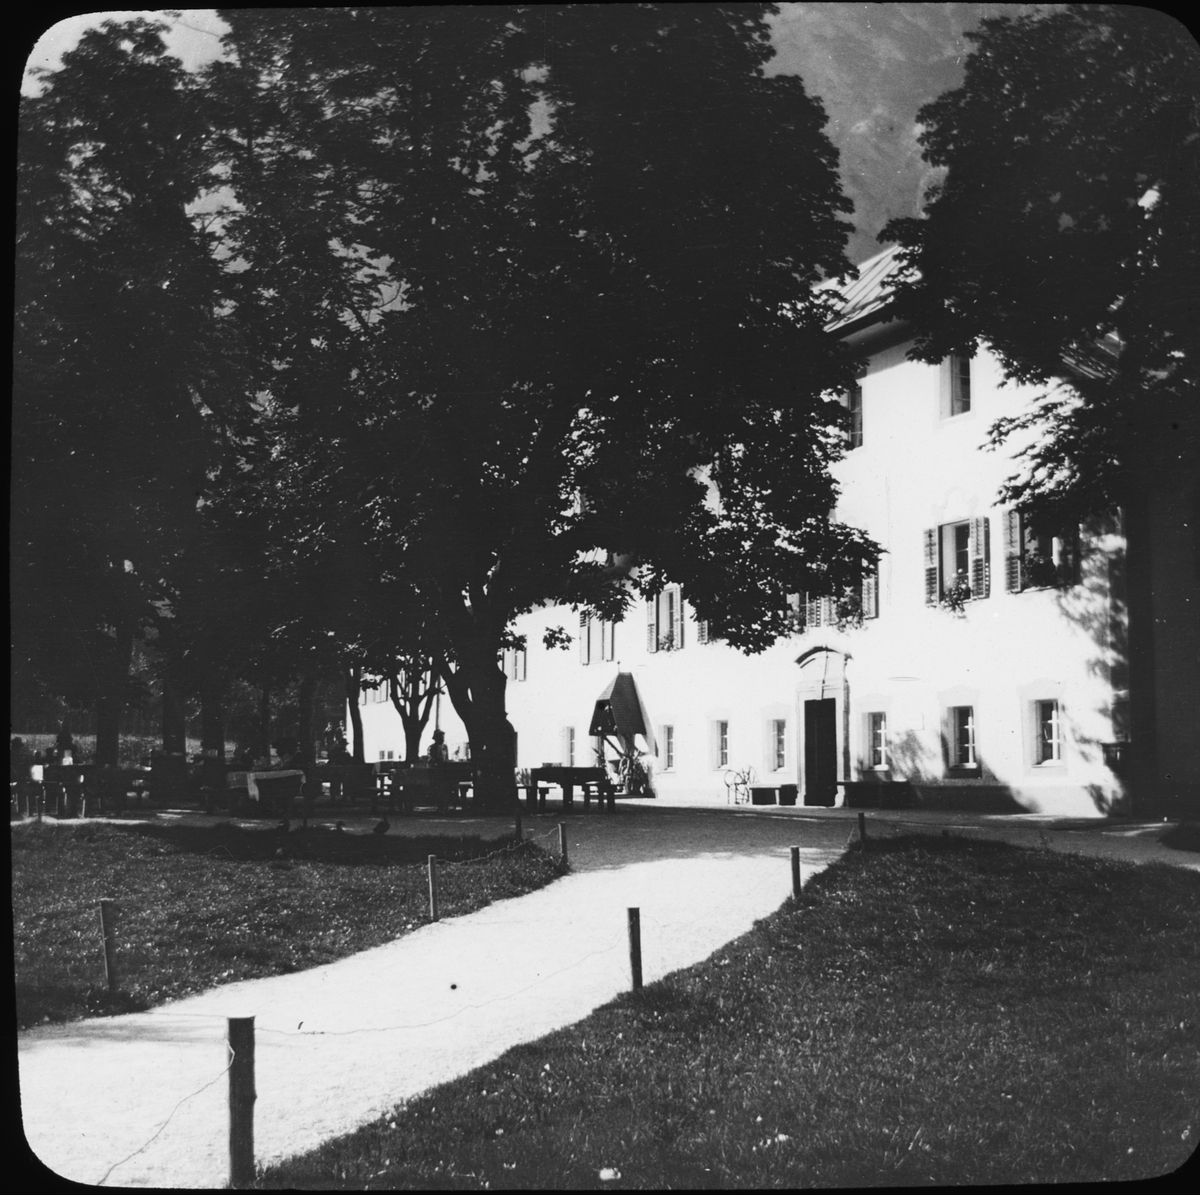 Skioptikonbild med motiv av byggnad, möjligen i Bartholomä.
Bilden har förvarats i kartong märkt: Höstresan 1910. Alhambra 9. N:22. Text på bild: "Der Köningssee".